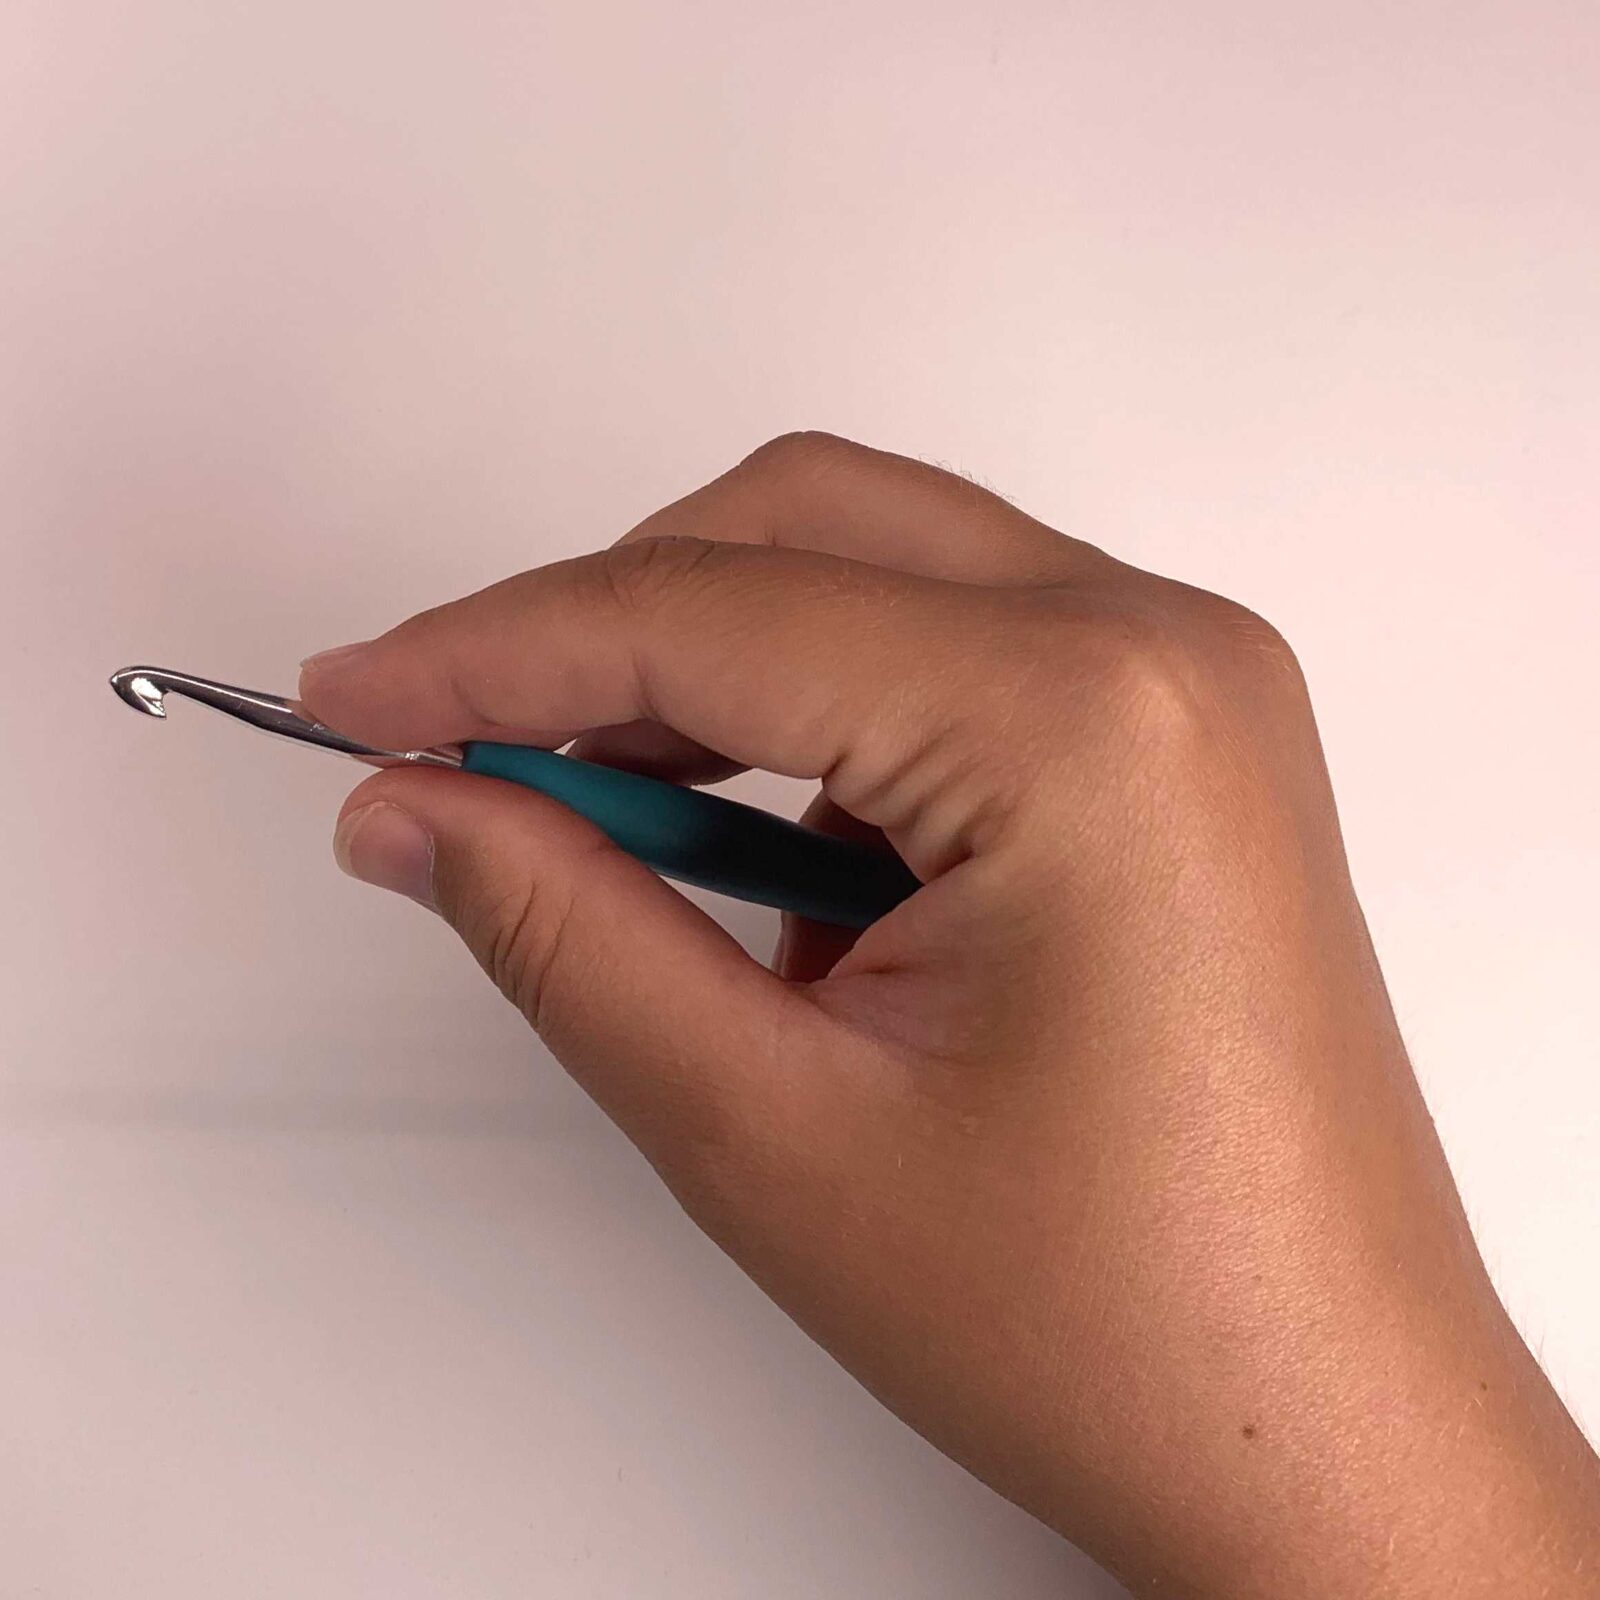 Ukázka pinzetového úchopu, který přetěžuje svaly na ruce při háčkování